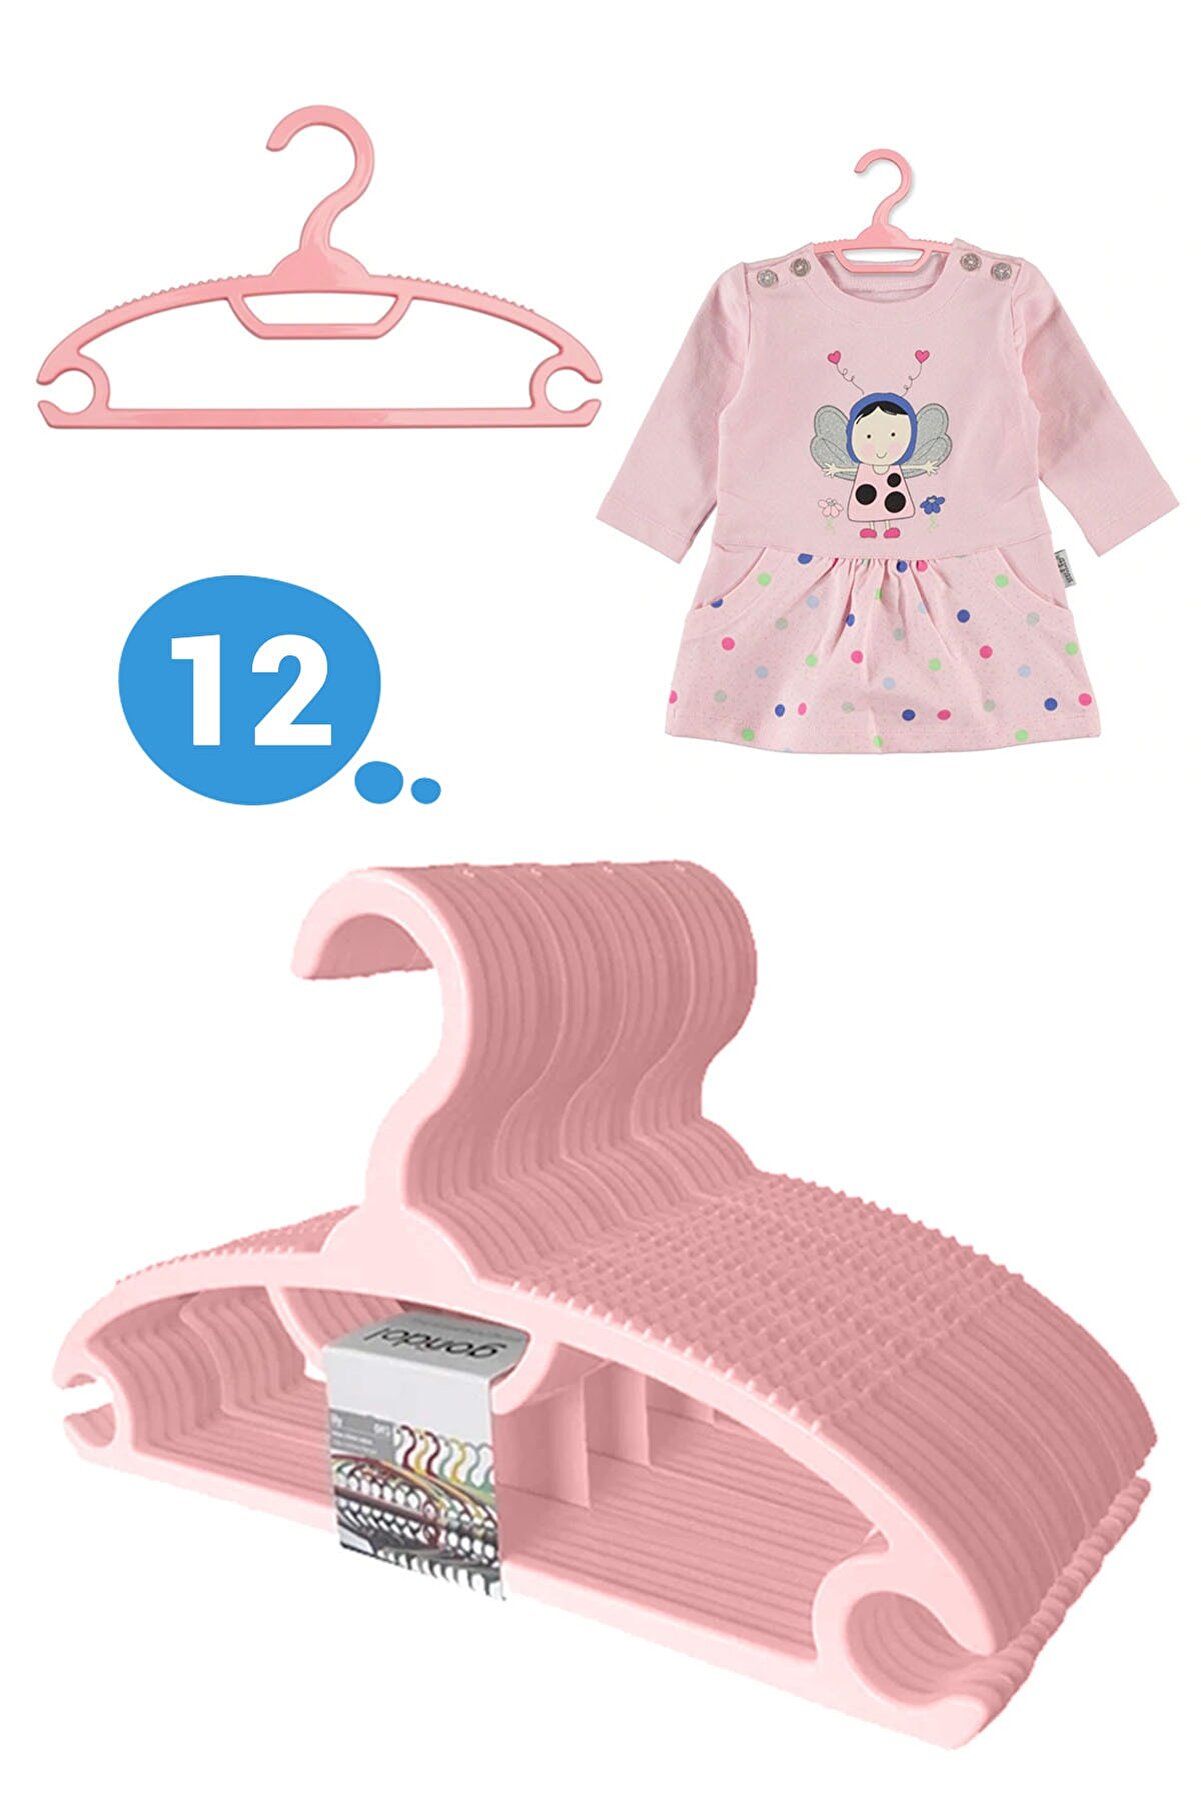 Morpanya Bebek Elbise Askısı Bebek Çocuk Giysi Kıyafet Askısı 12 Adet Gondol Pembe Askı